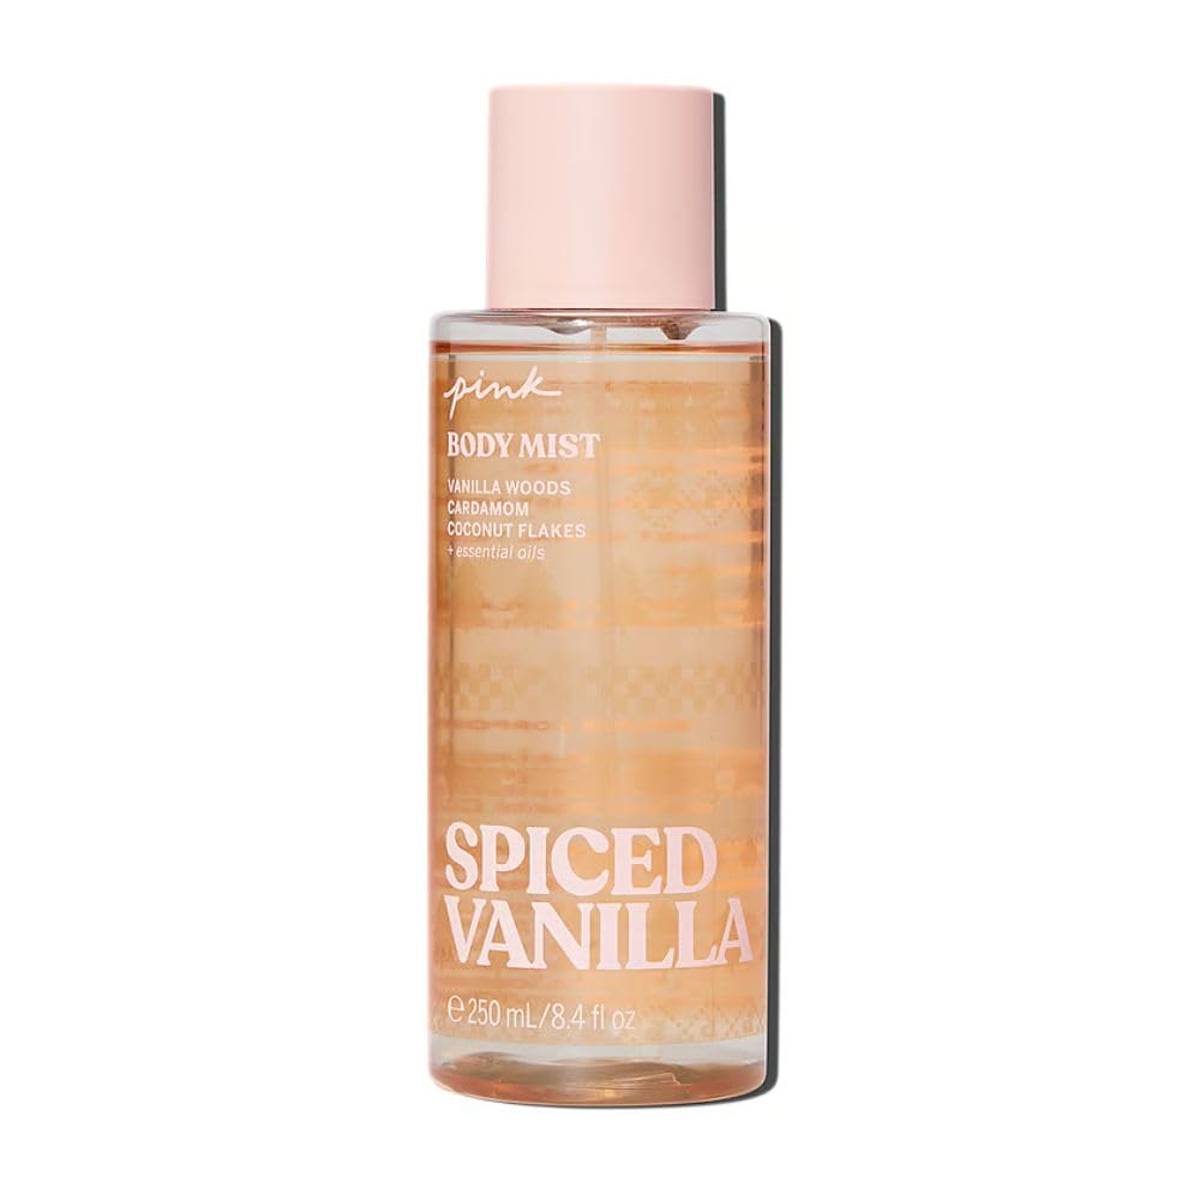 بادی میست اسپایسد وانیلا ~Spiced Vanilla Body Mist~VICTORIA'S SECRET